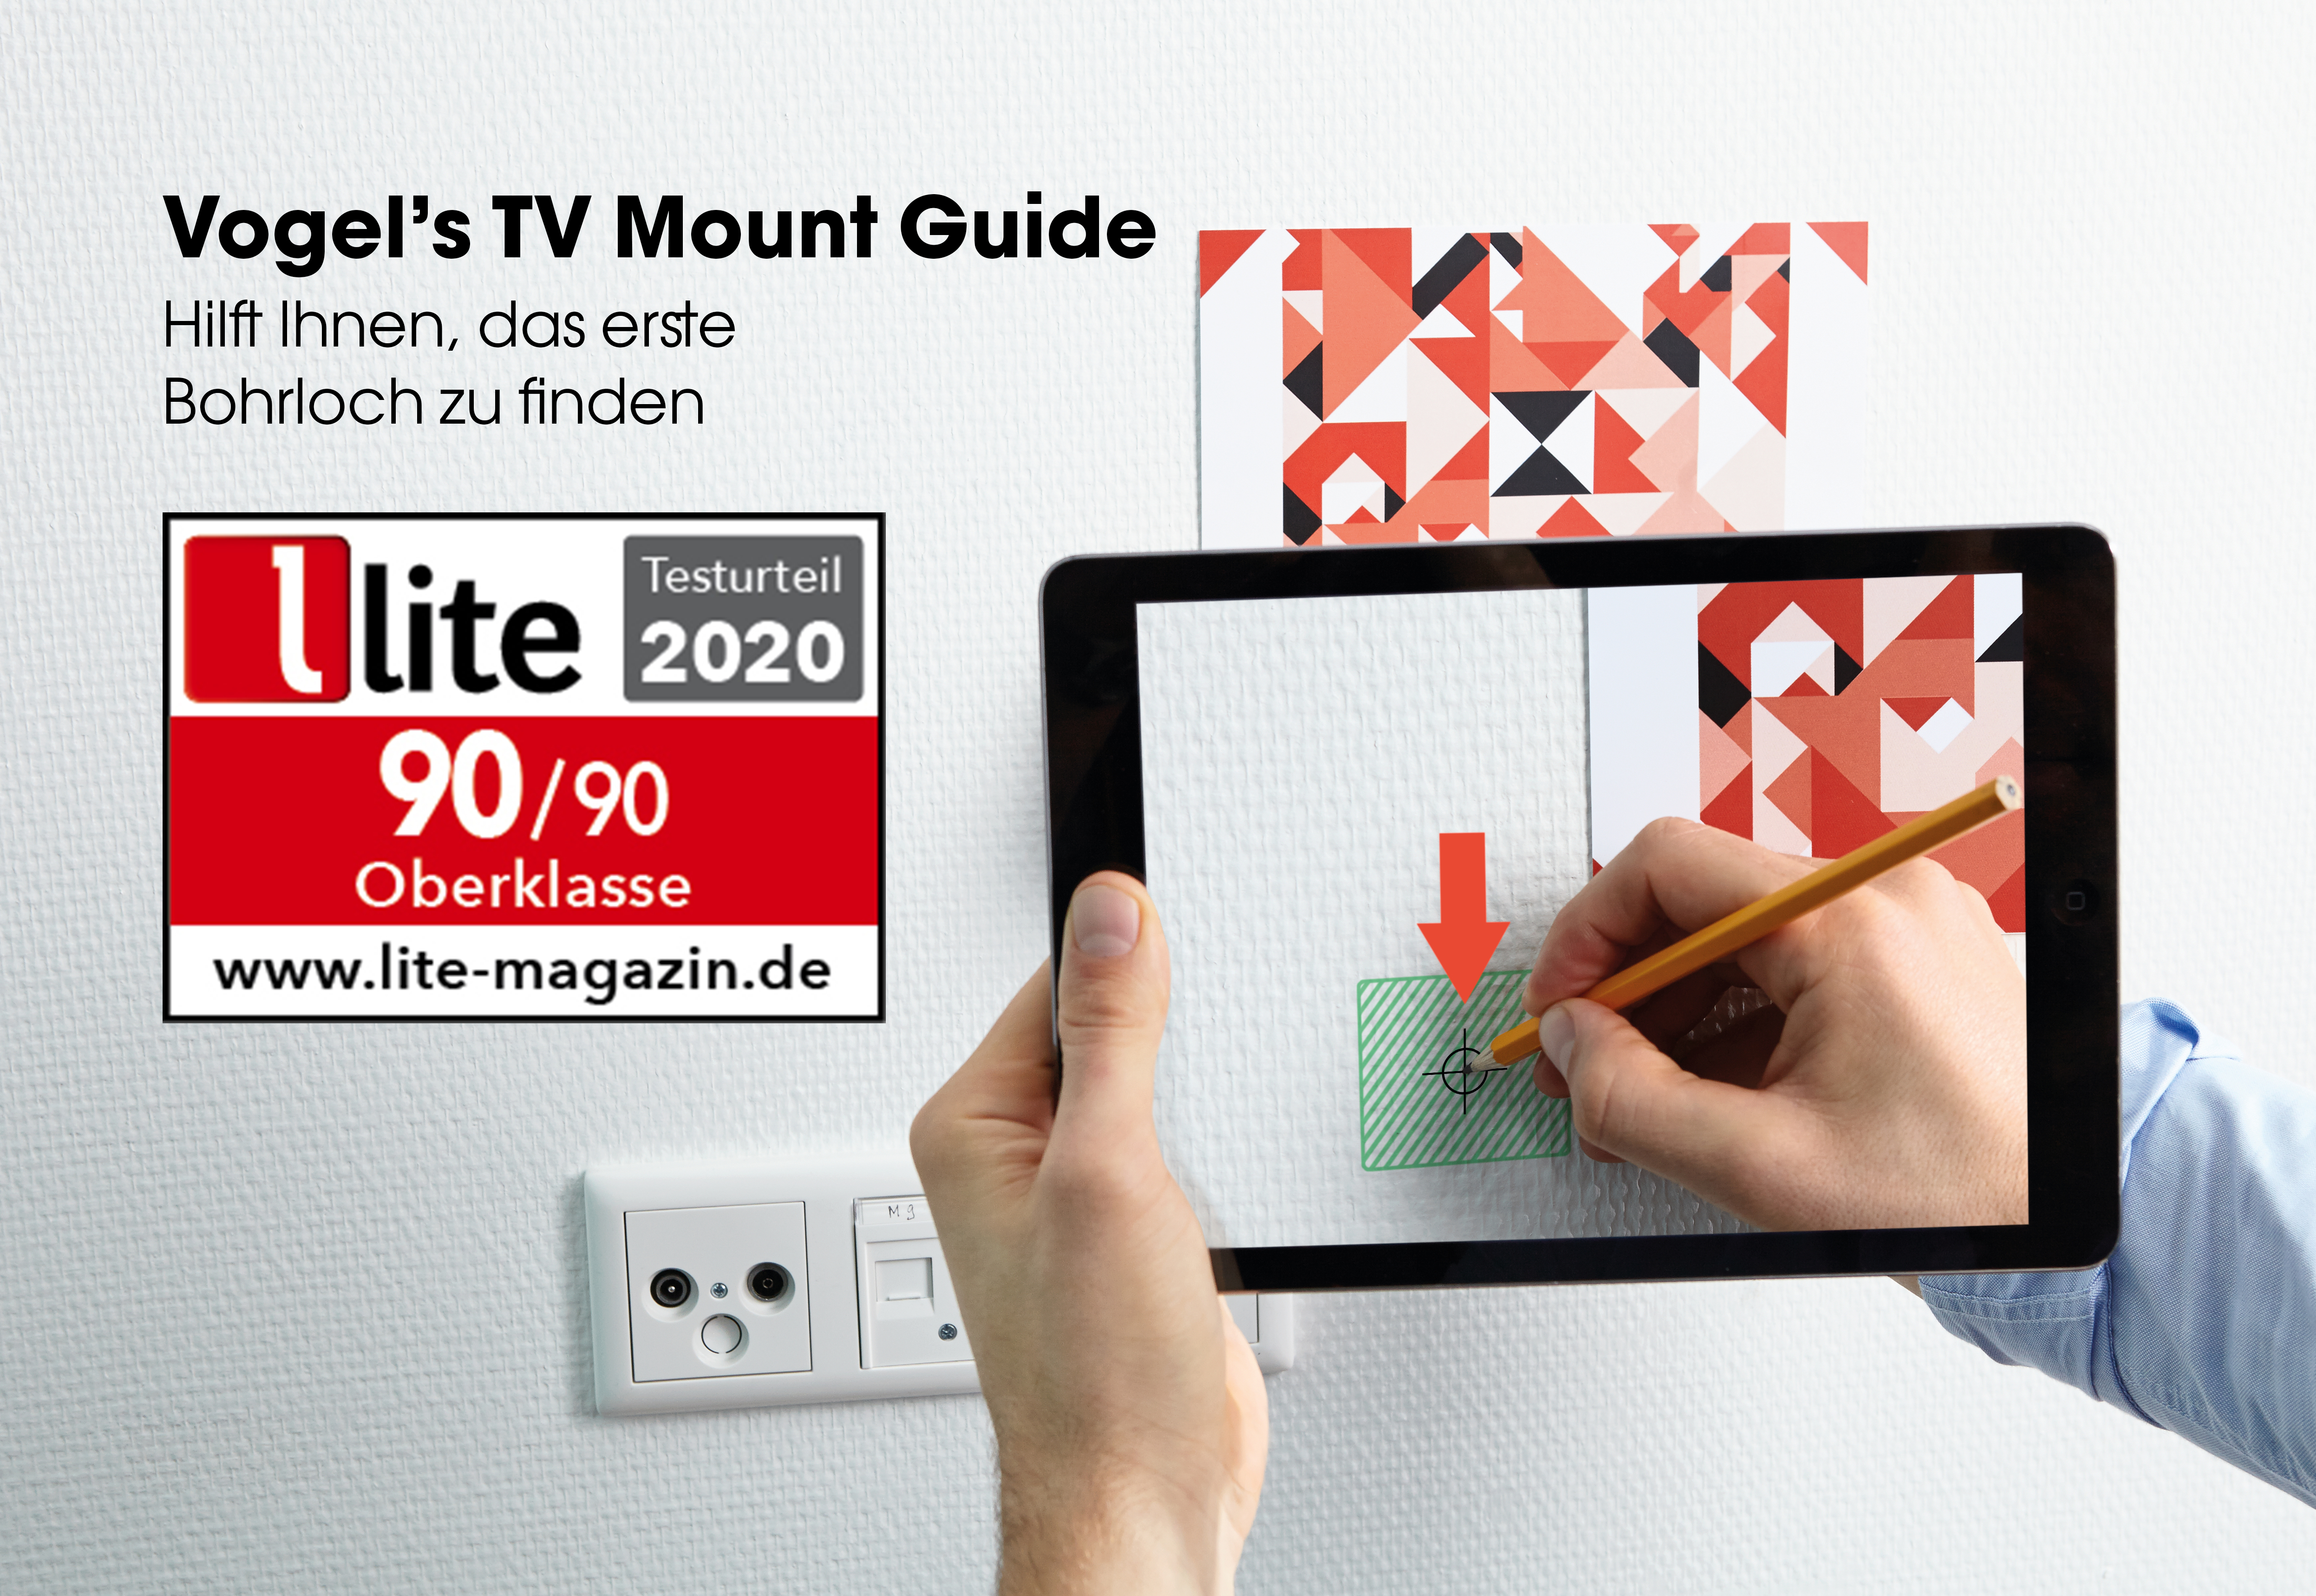 Tv Mount Guide App | Vogel's 